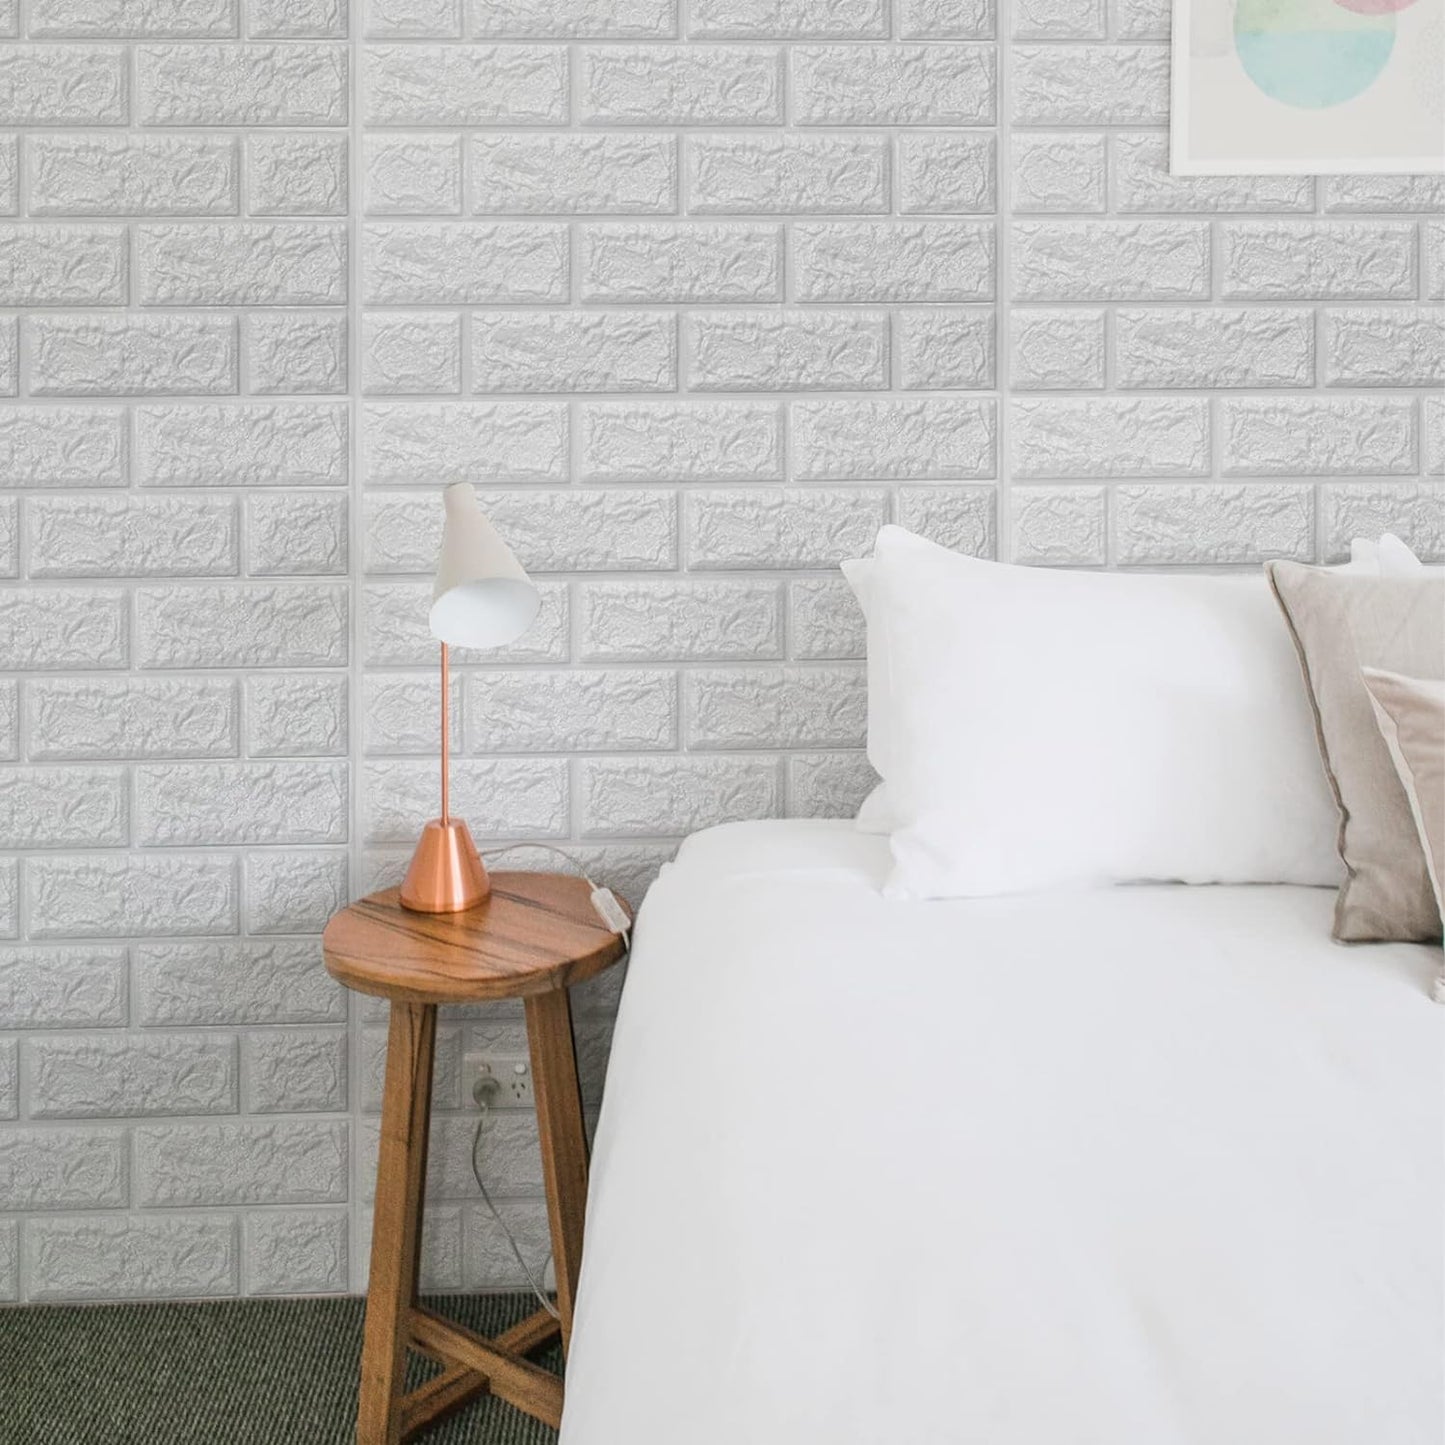 Art3d 30 Stück 3D-Ziegelstein-Tapete in Weiß, Kunstschaum-Ziegelwandpaneele zum Abziehen und Aufkleben, wasserfest für Schlafzimmer, Wohnzimmer und Wäscherei-Dekor (43,5 m²)